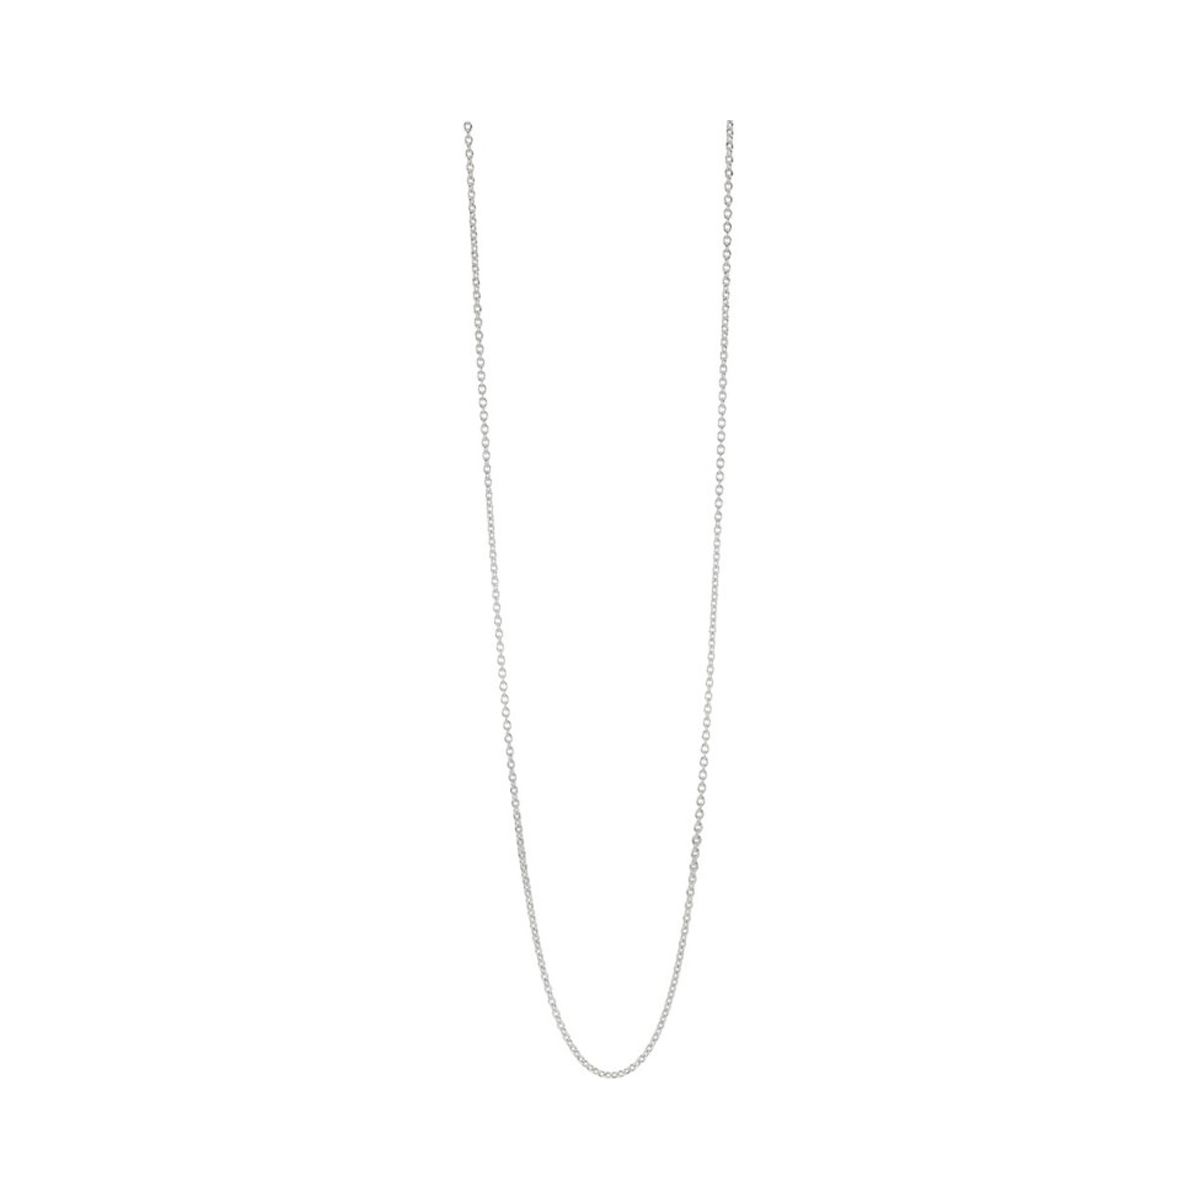 PANDORA Chain Necklace 60cm / 23.6"